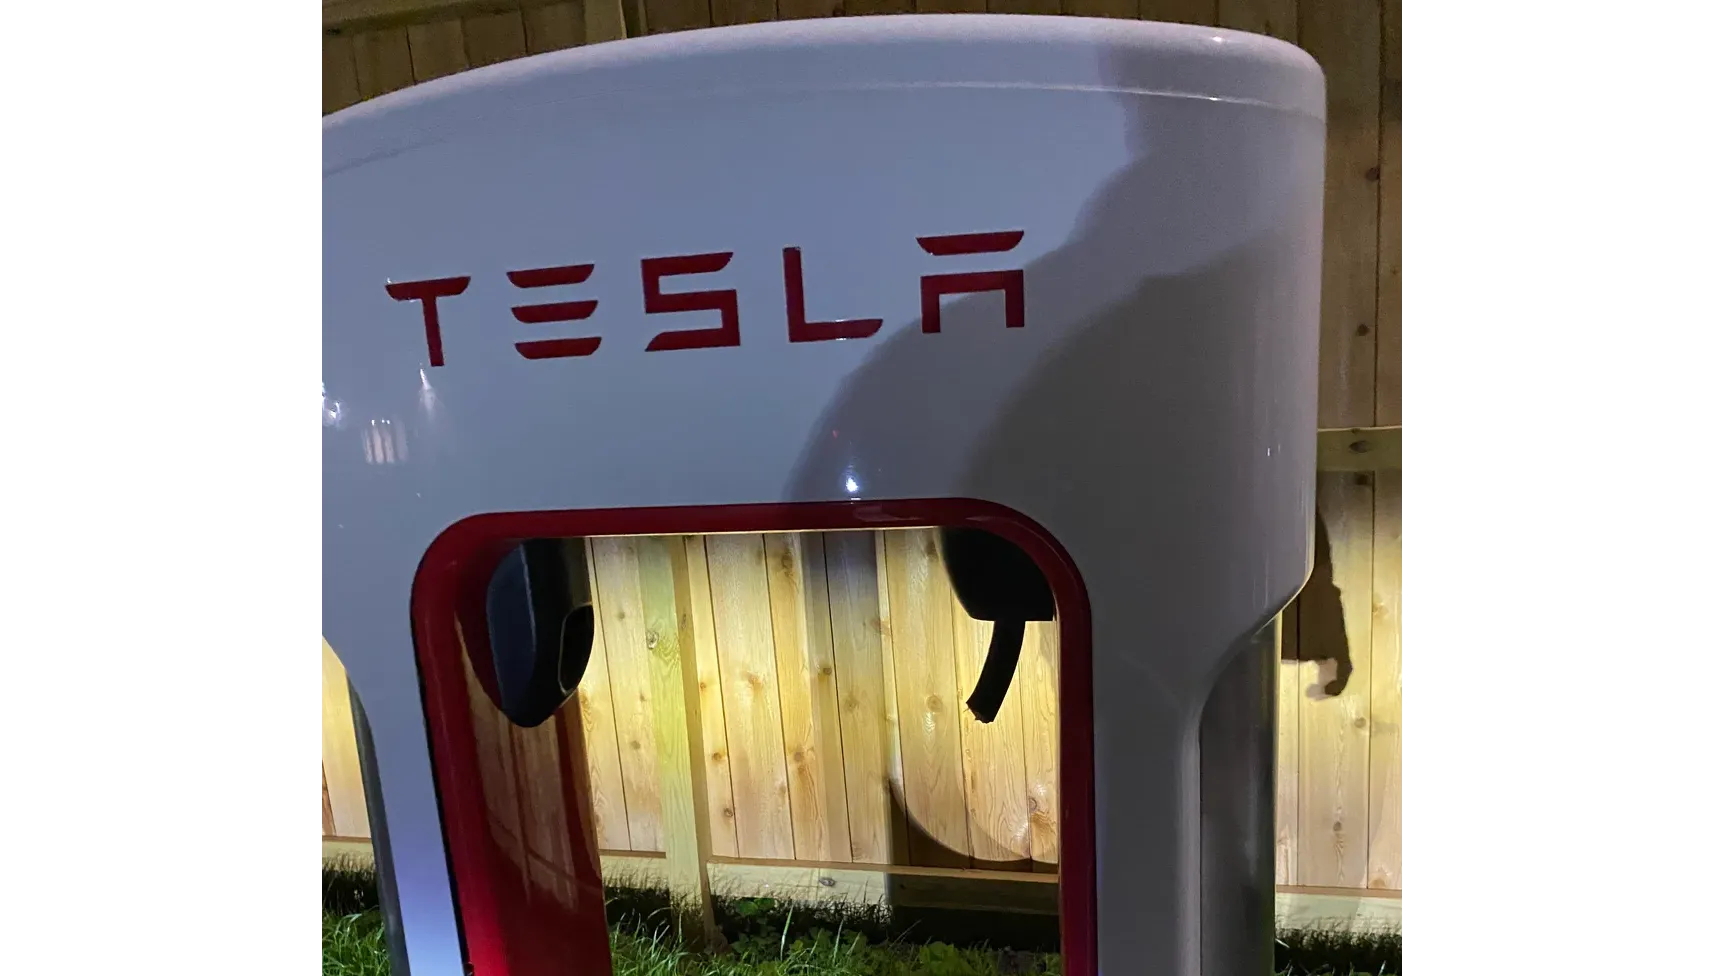 Vandalism at Tesla Supercharger Station in Houston Sparks Concerns